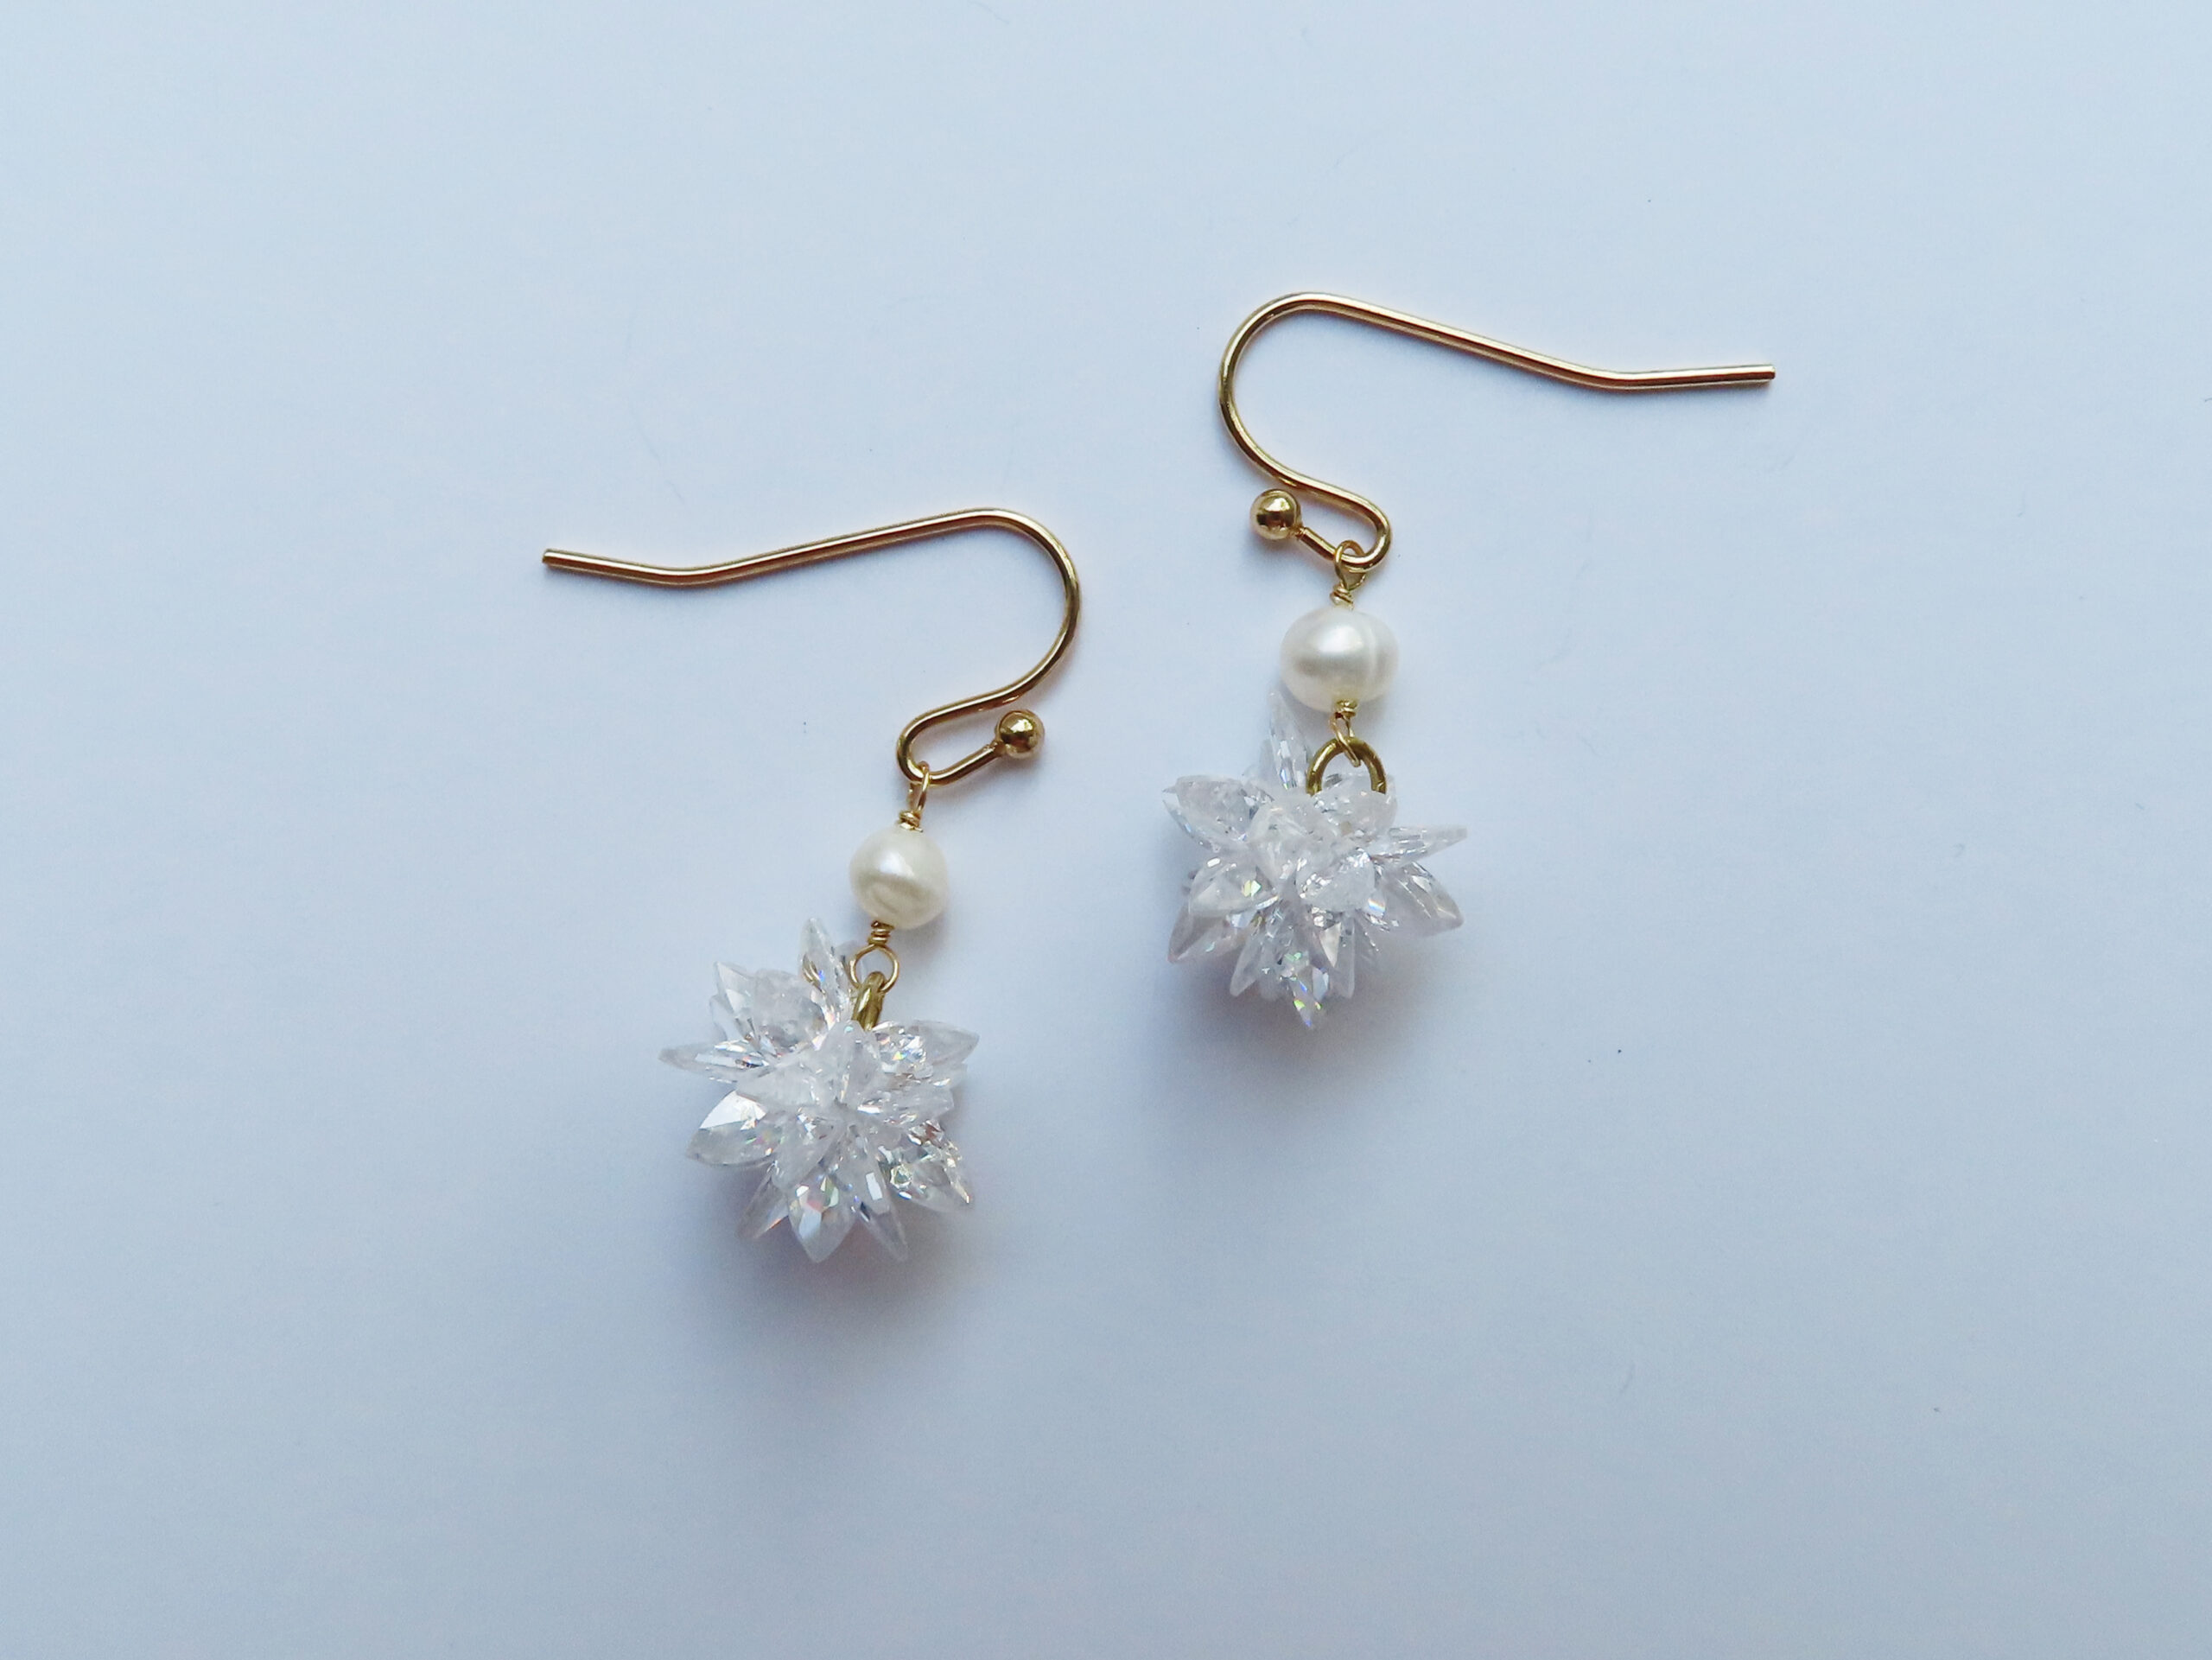 Snowflake and freshwater pearl earrings